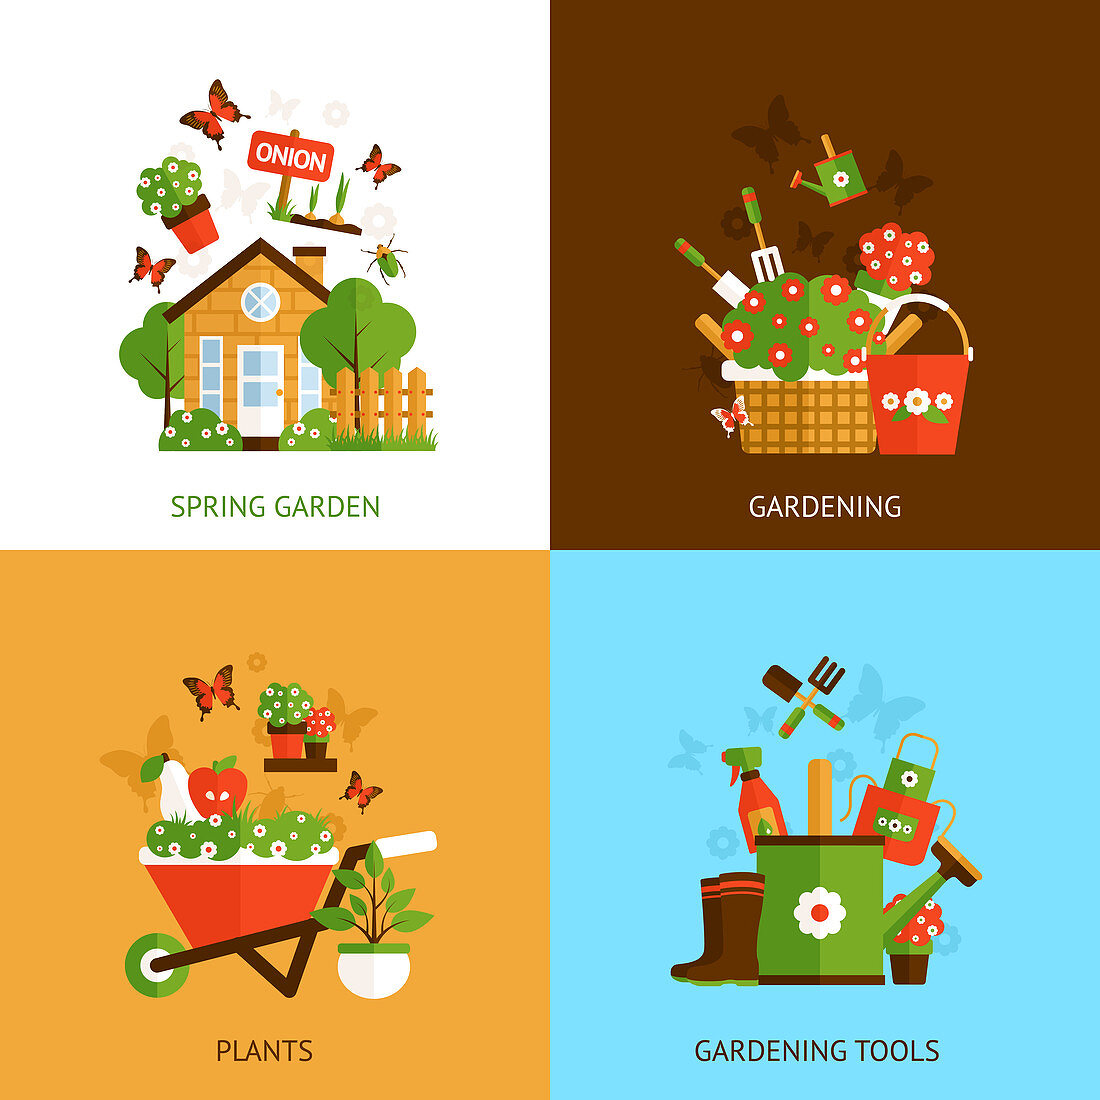 Gardening, illustration